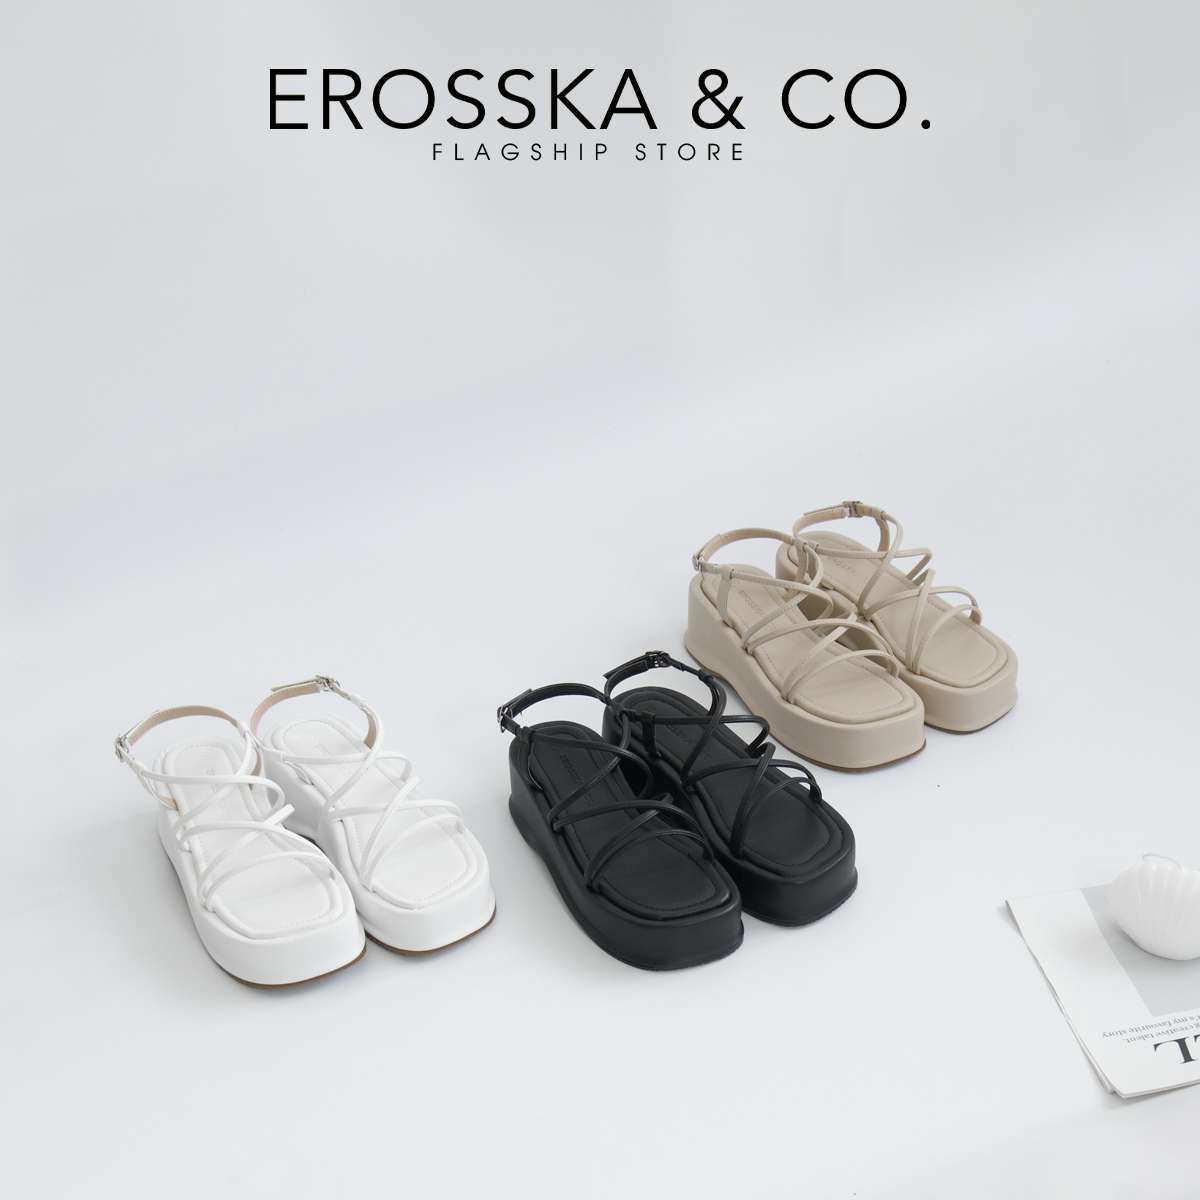 Erosska - Giày sandal nữ đế xuồng phối dây quai mảnh thiết kế basic cao 5cm màu nude - SB014